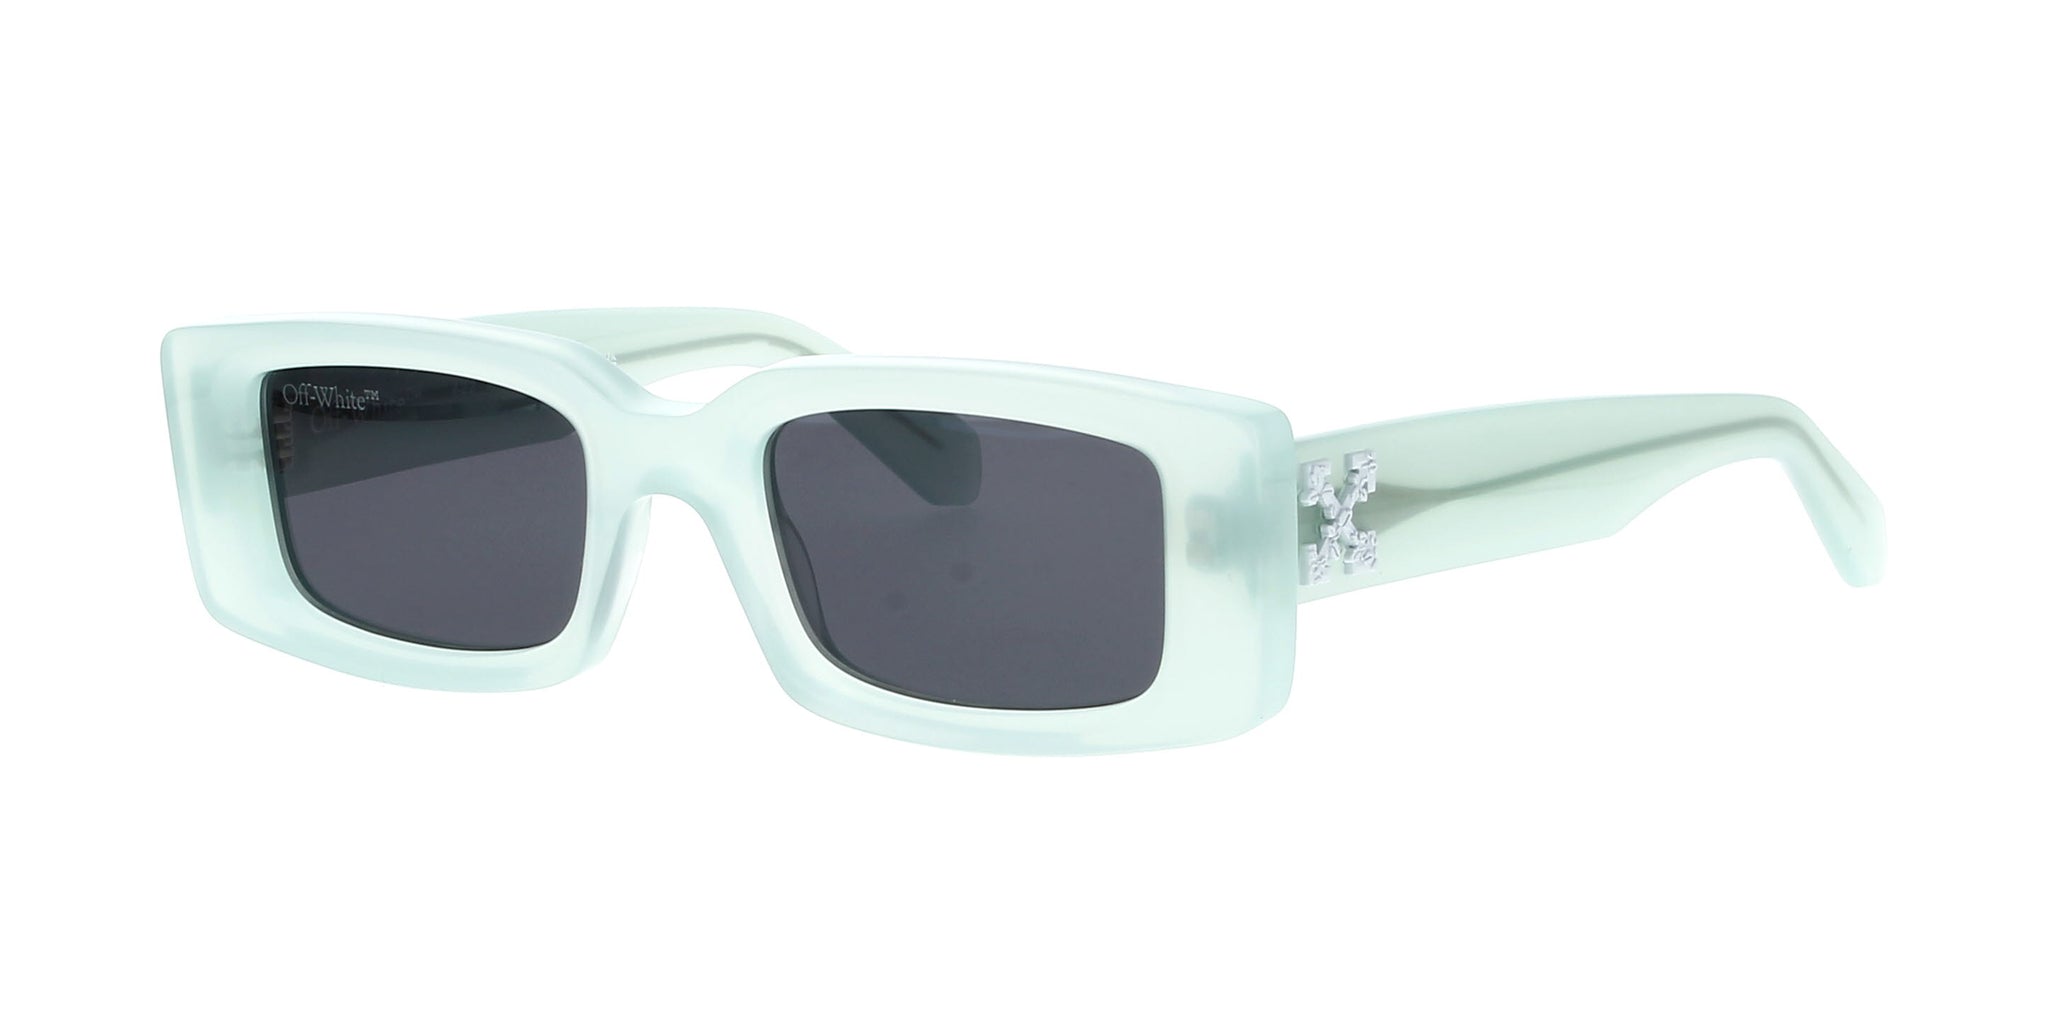 OFF-WHITE Sunglasses OERI025 0107